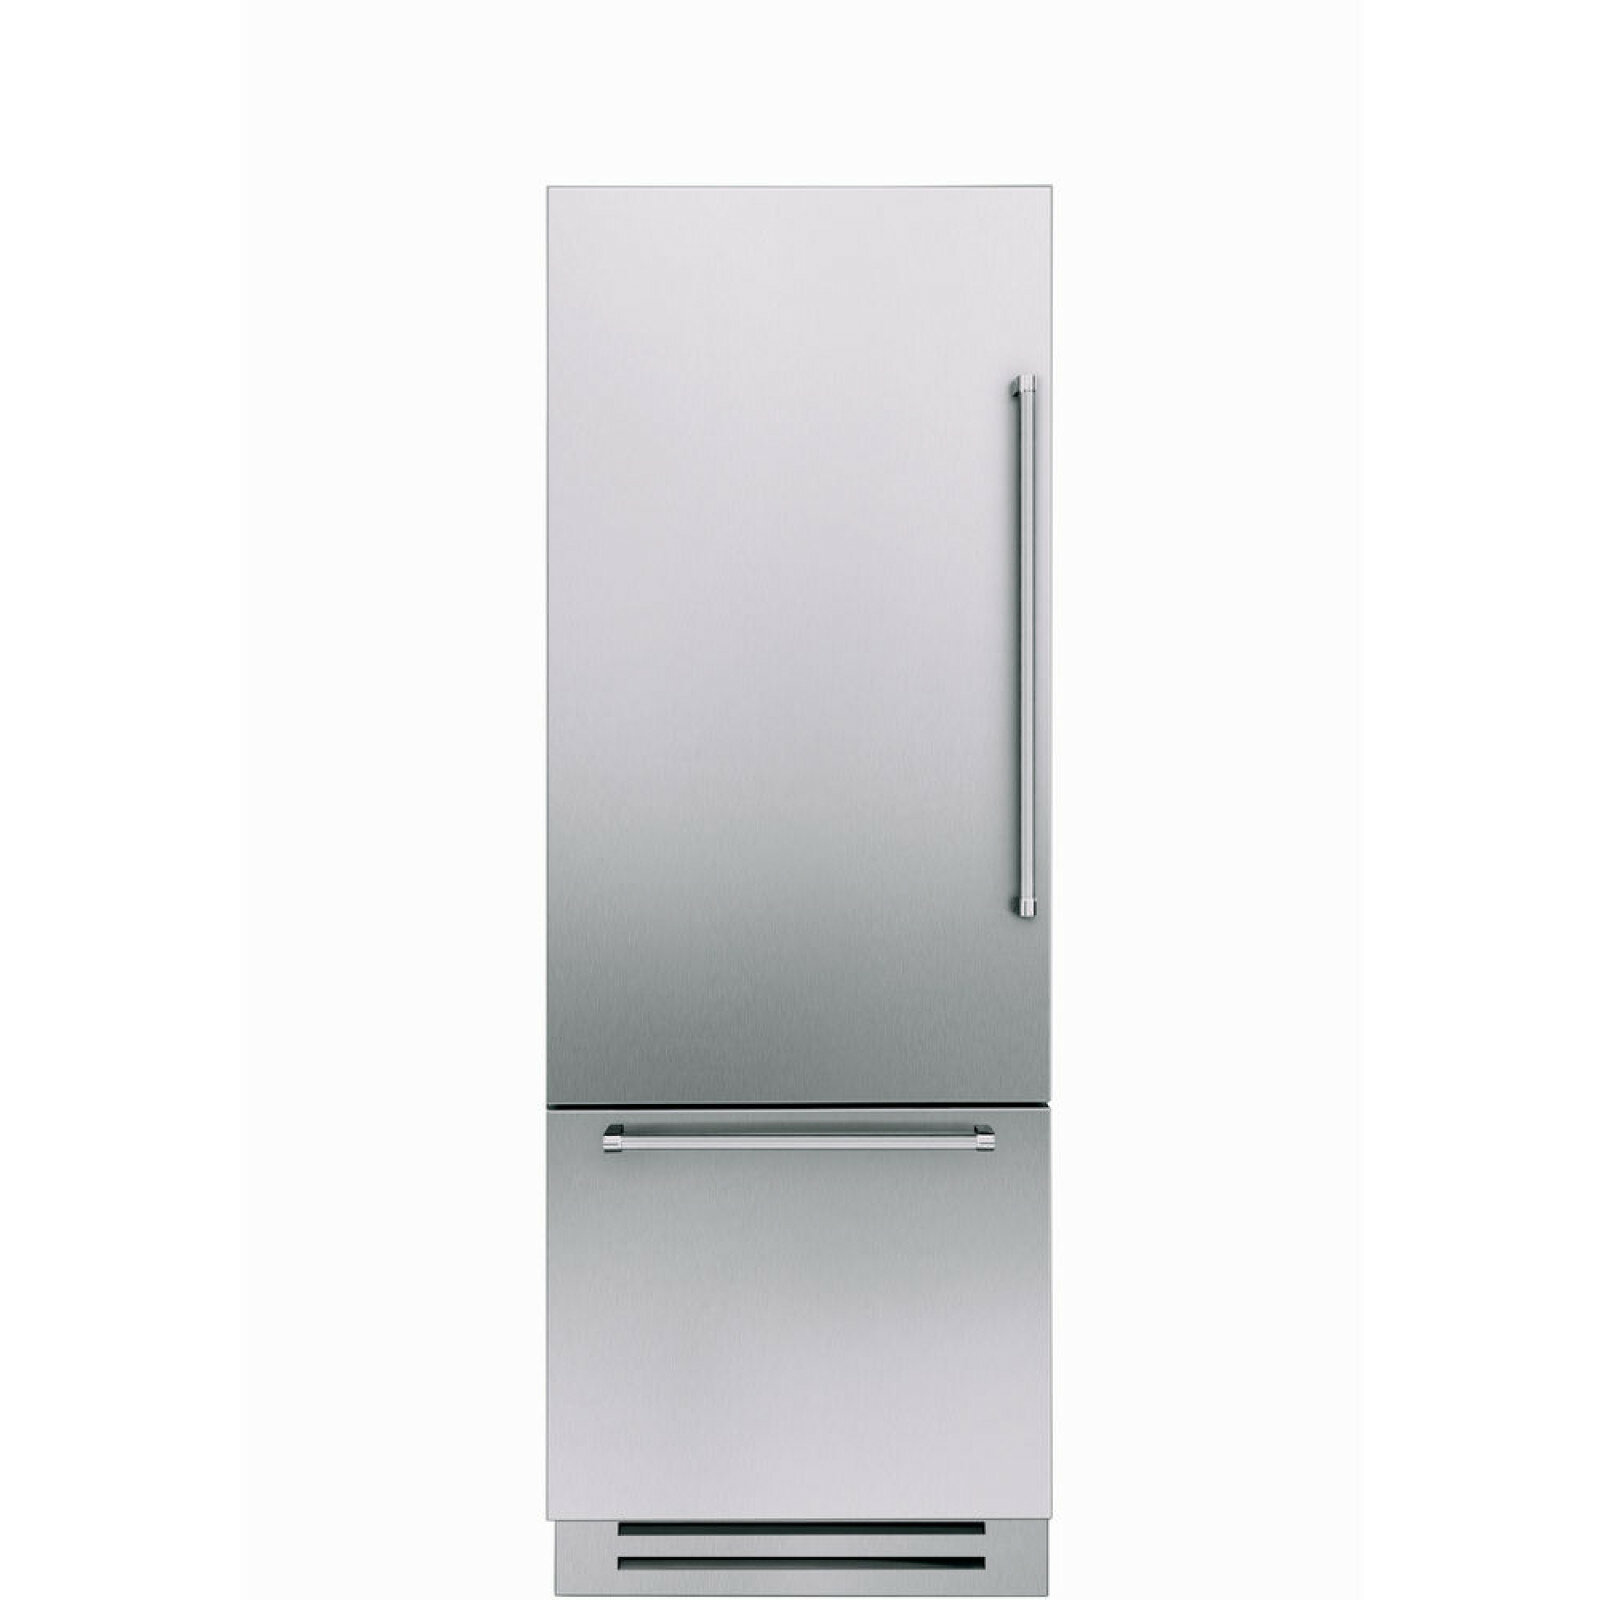 Холодильник встраиваемый Vertigo (американский стандарт) KitchenAid KCZCX 20750L